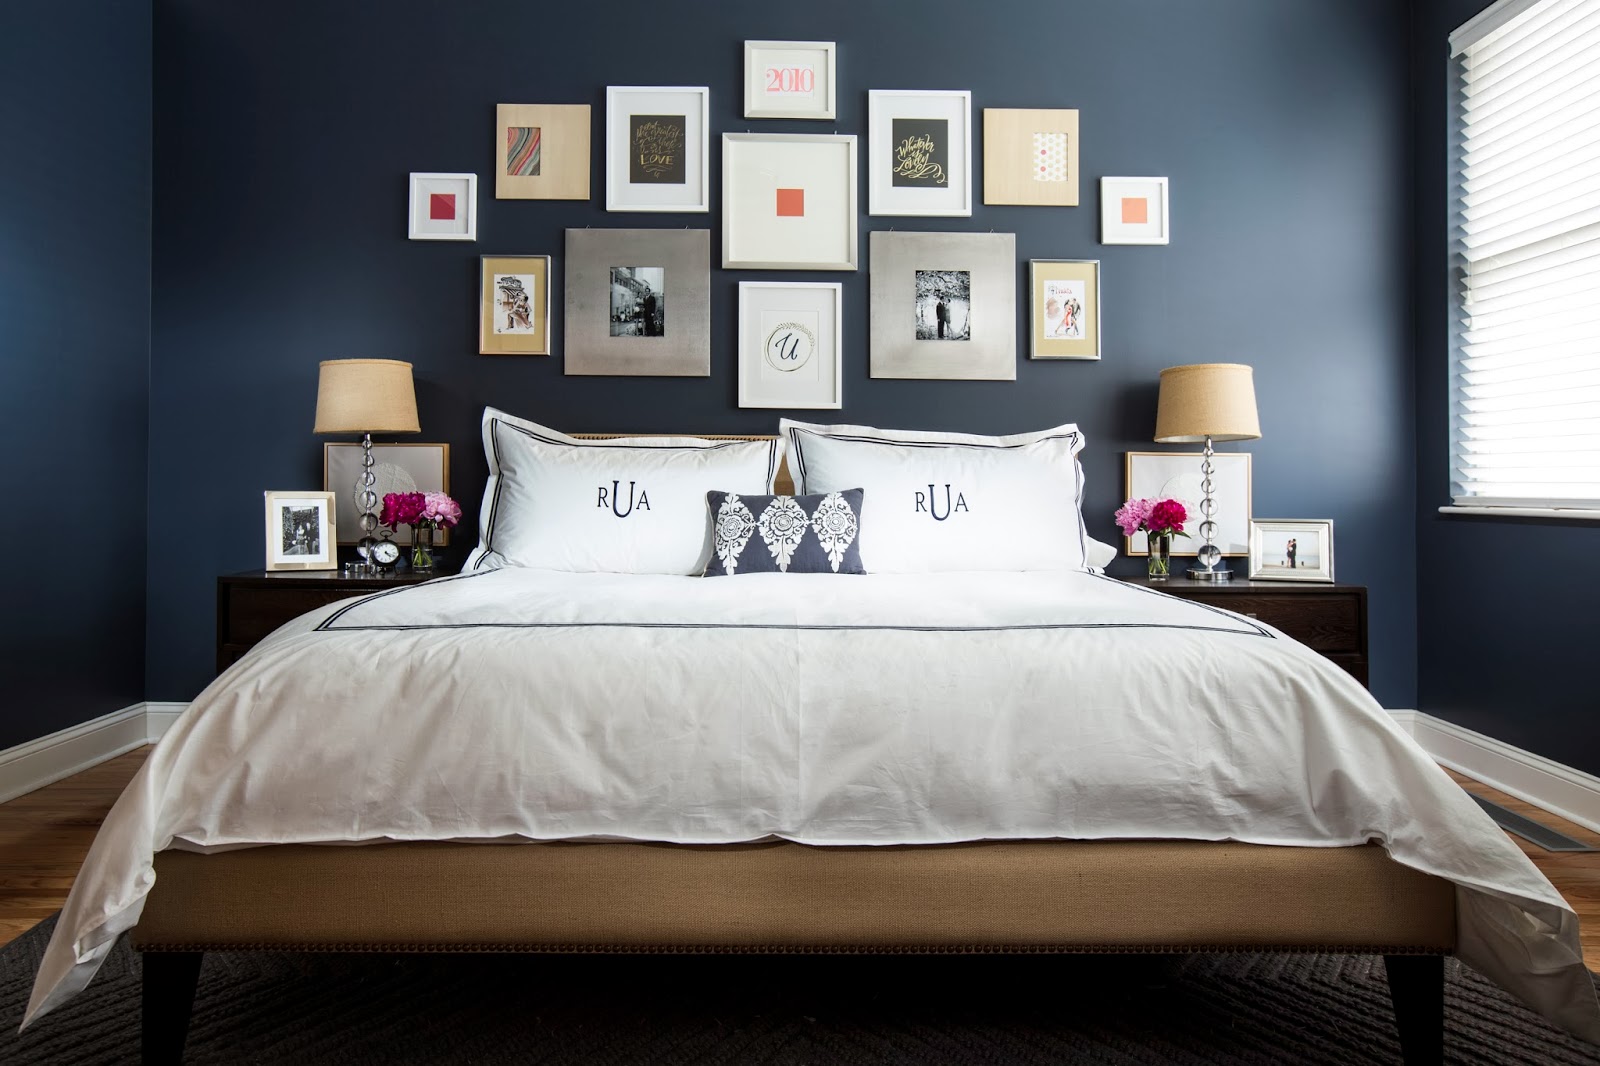 Navy & Dark Blue Bedroom Design Ideas & Pictures